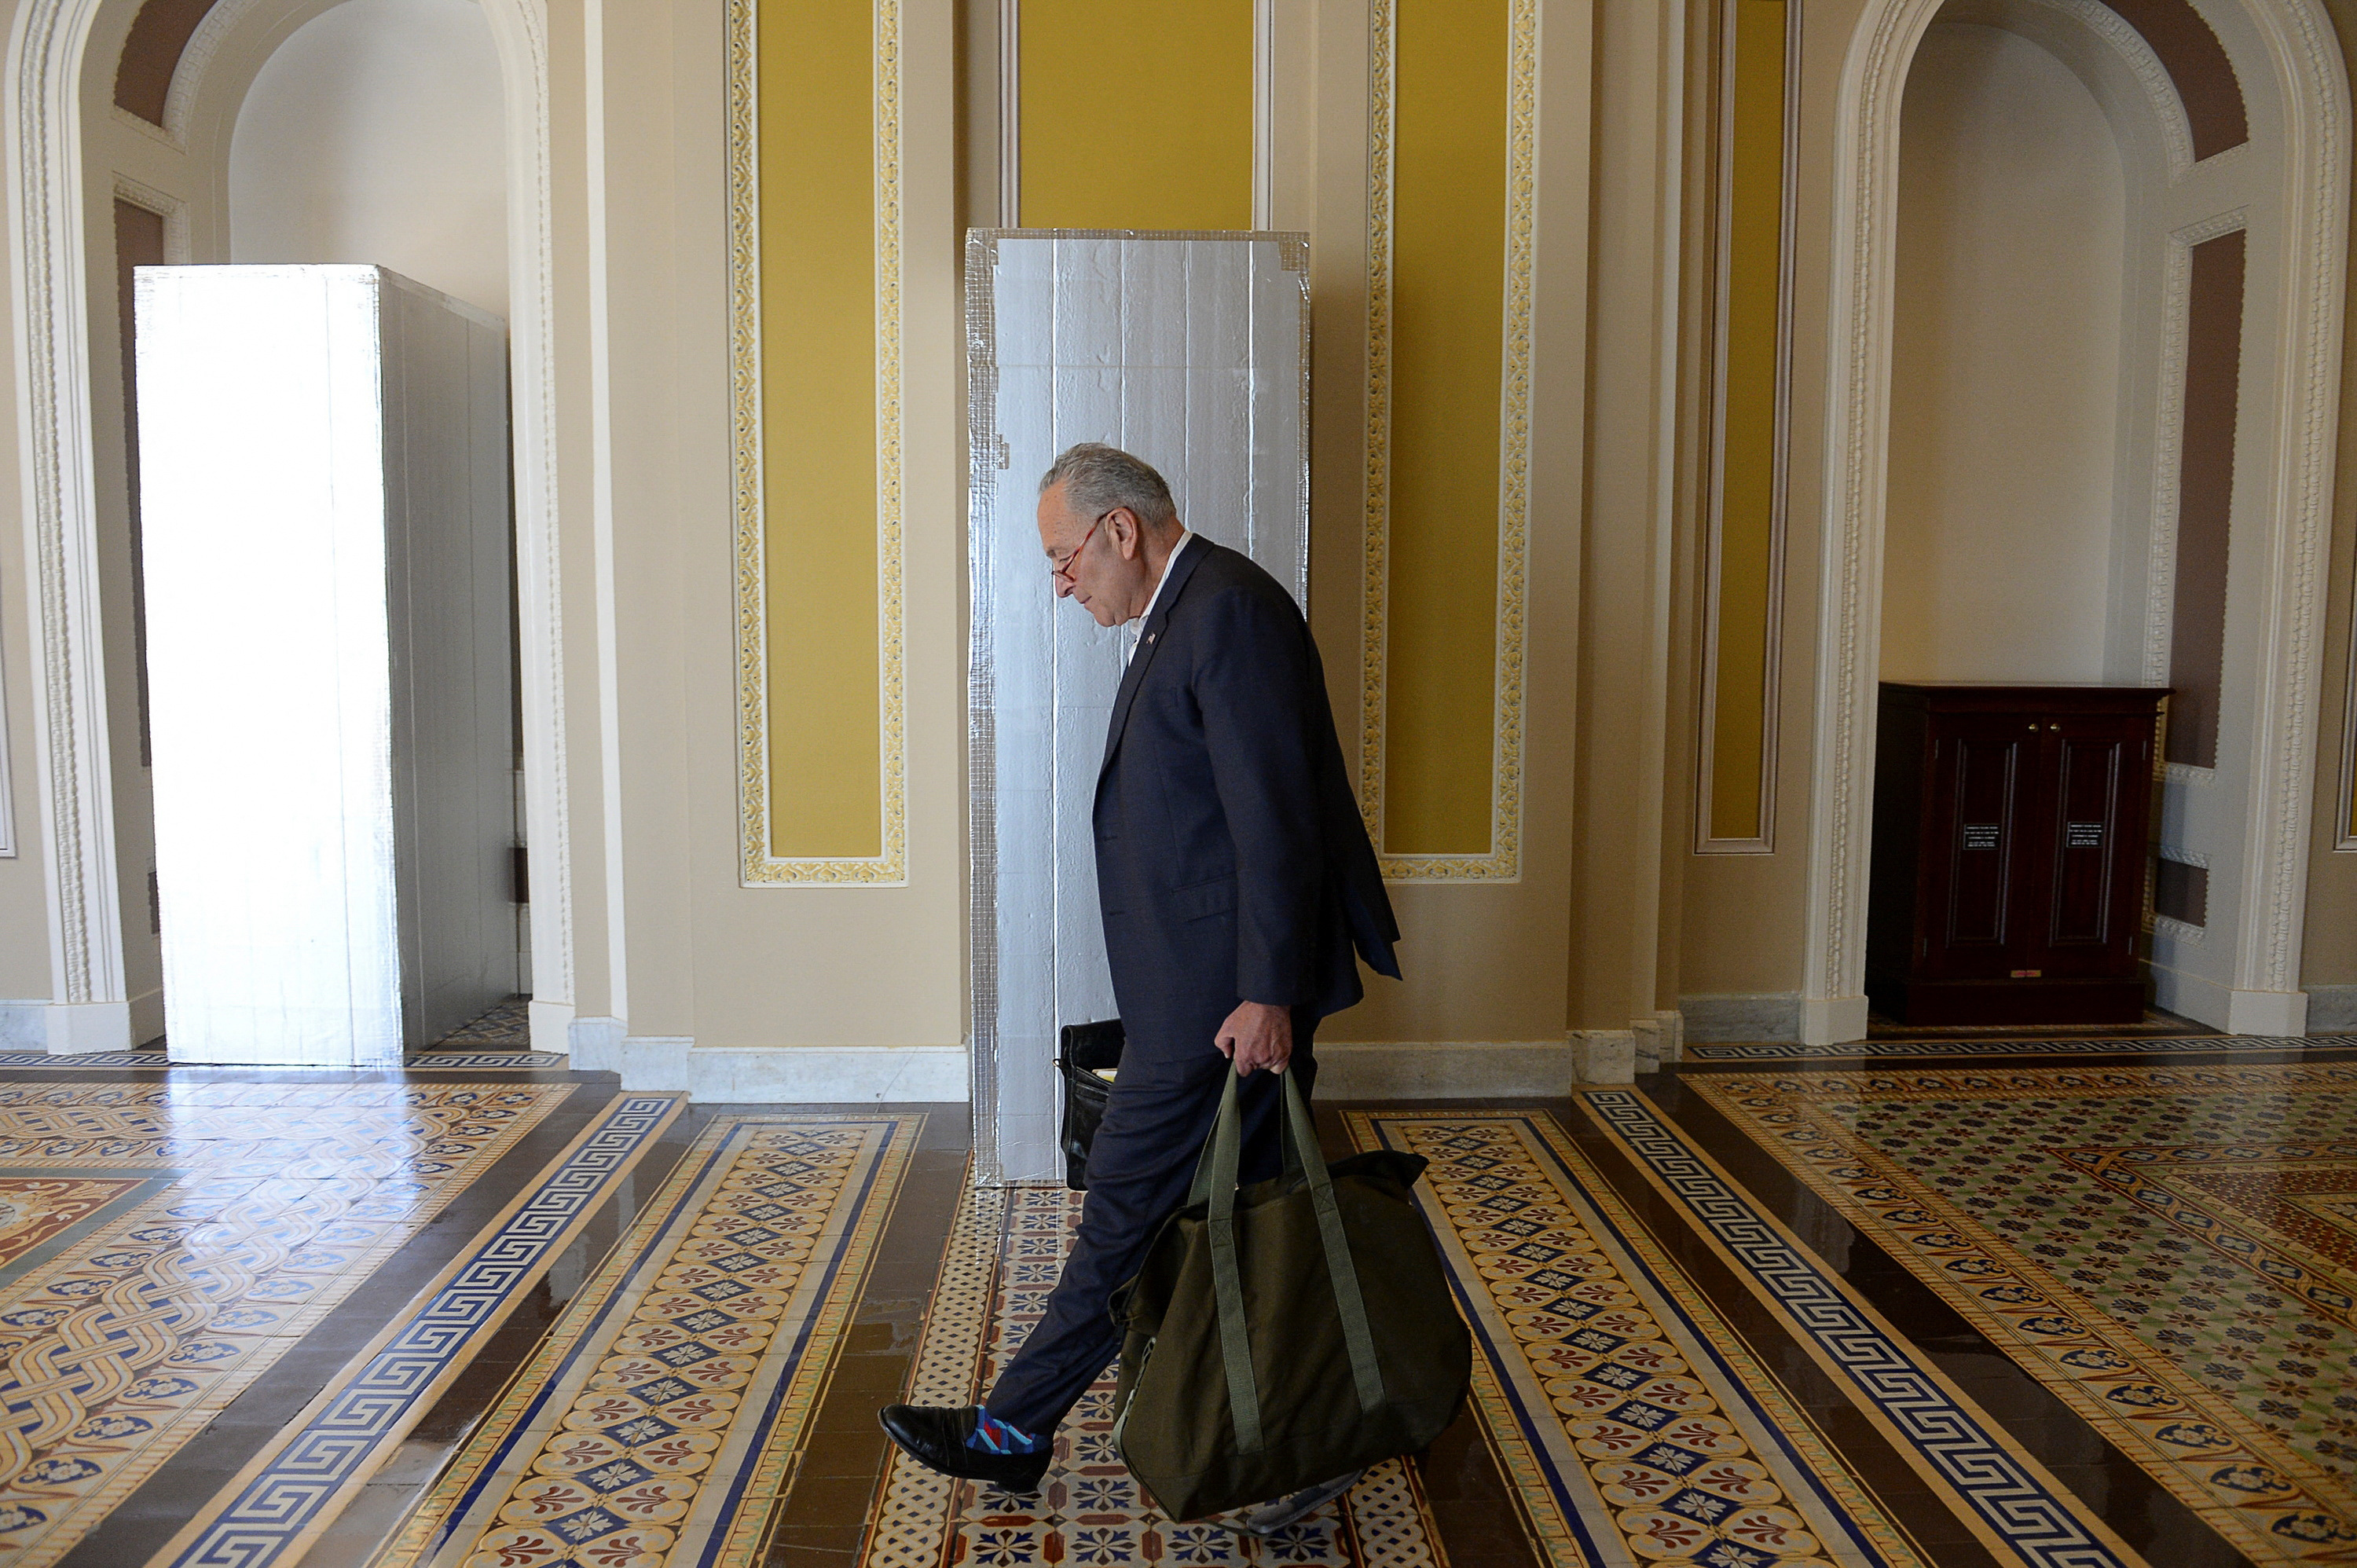 Senate Majority Leader Chuck Schumer (D-NY) arrives at the U.S. Capitol